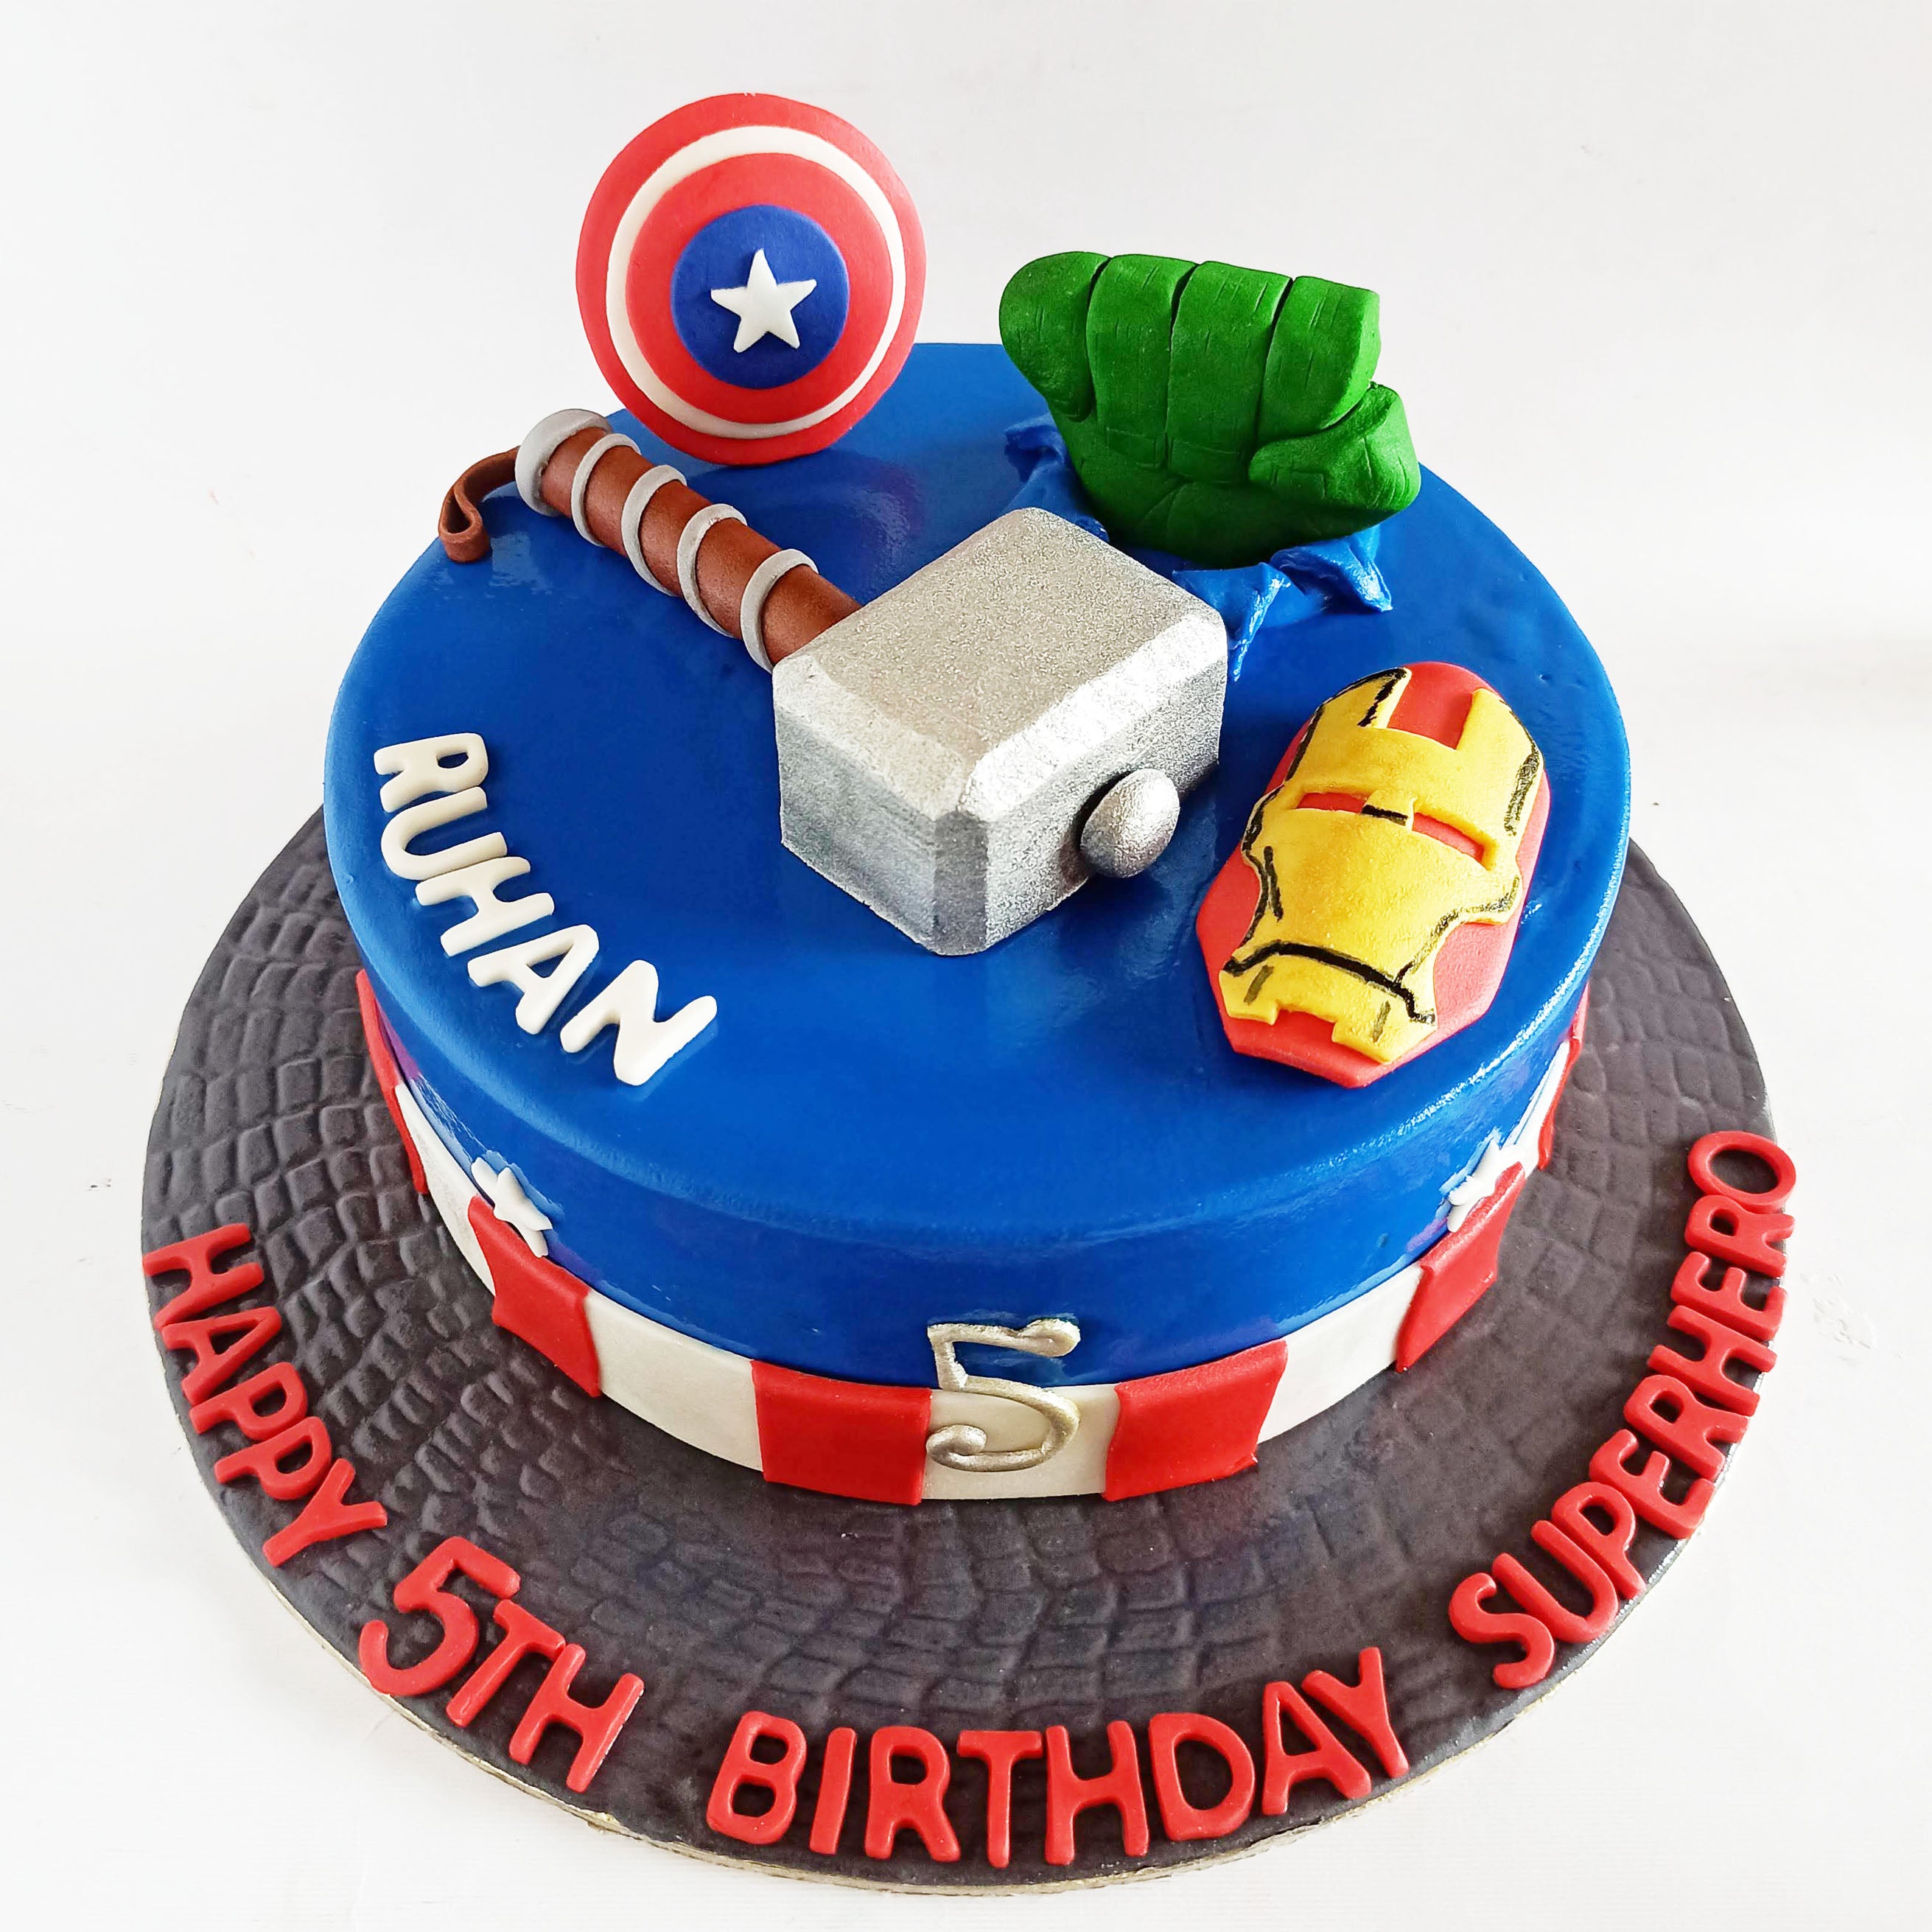 Superheroes Avengers Birthday Cake For Kids